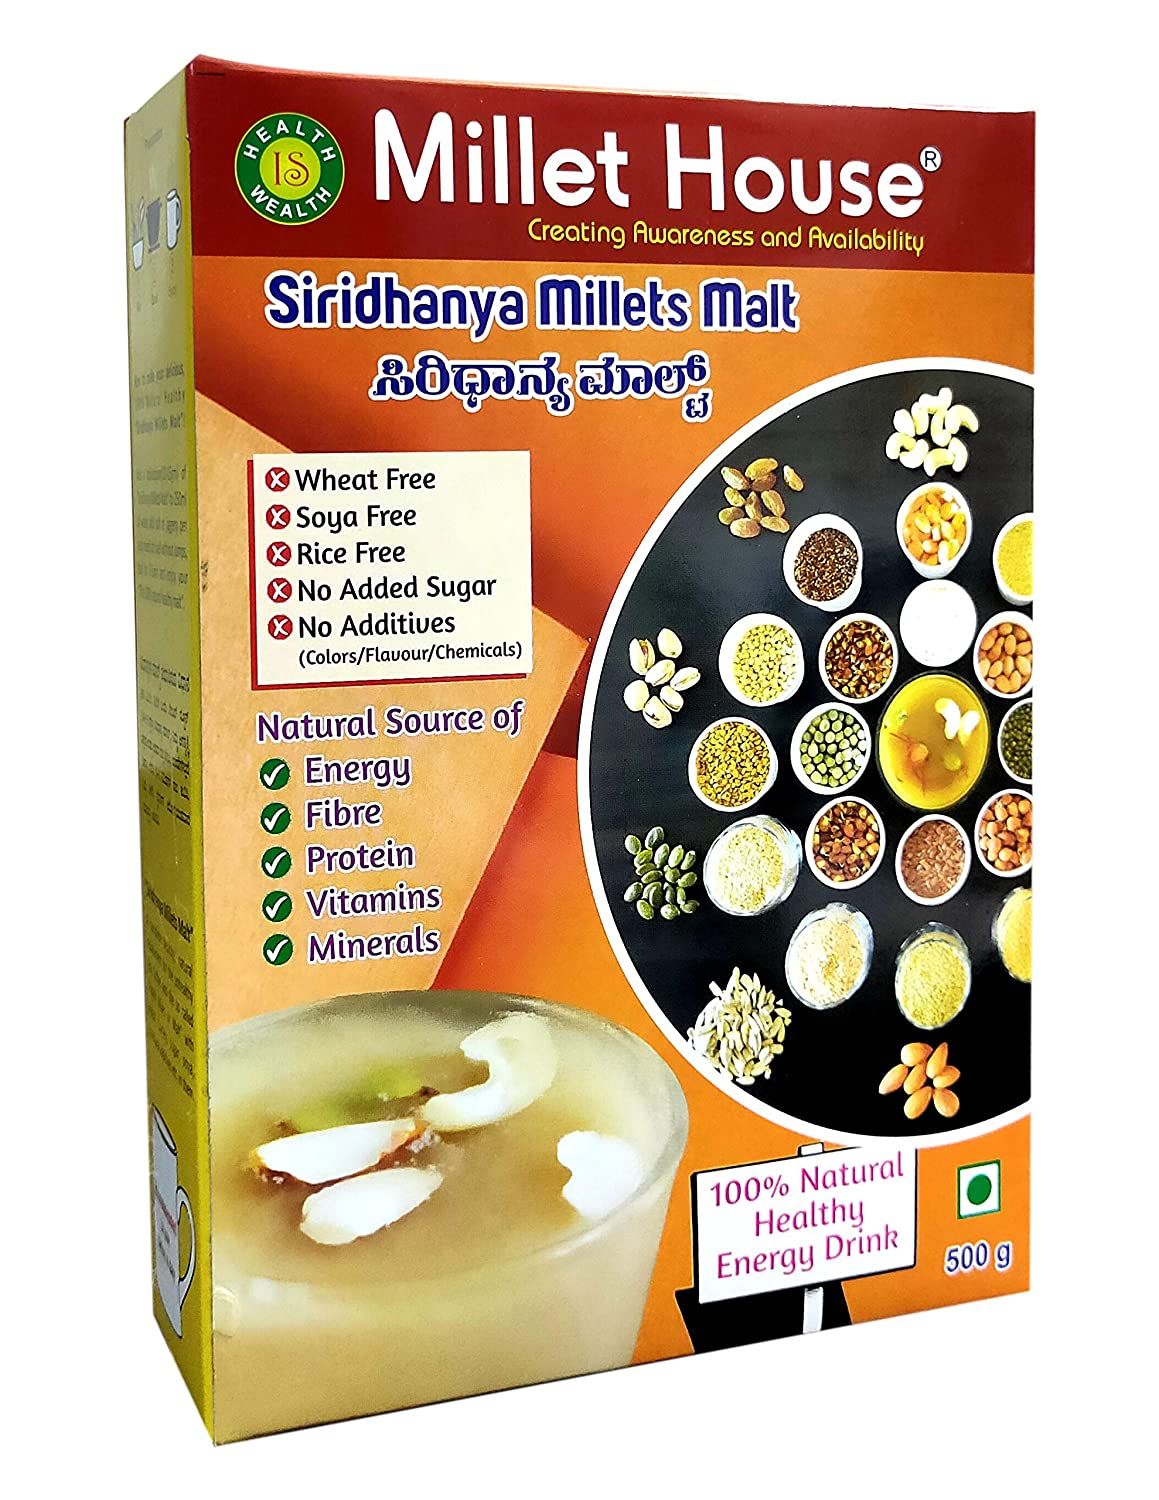 Millet House Malt Millet Drink Image